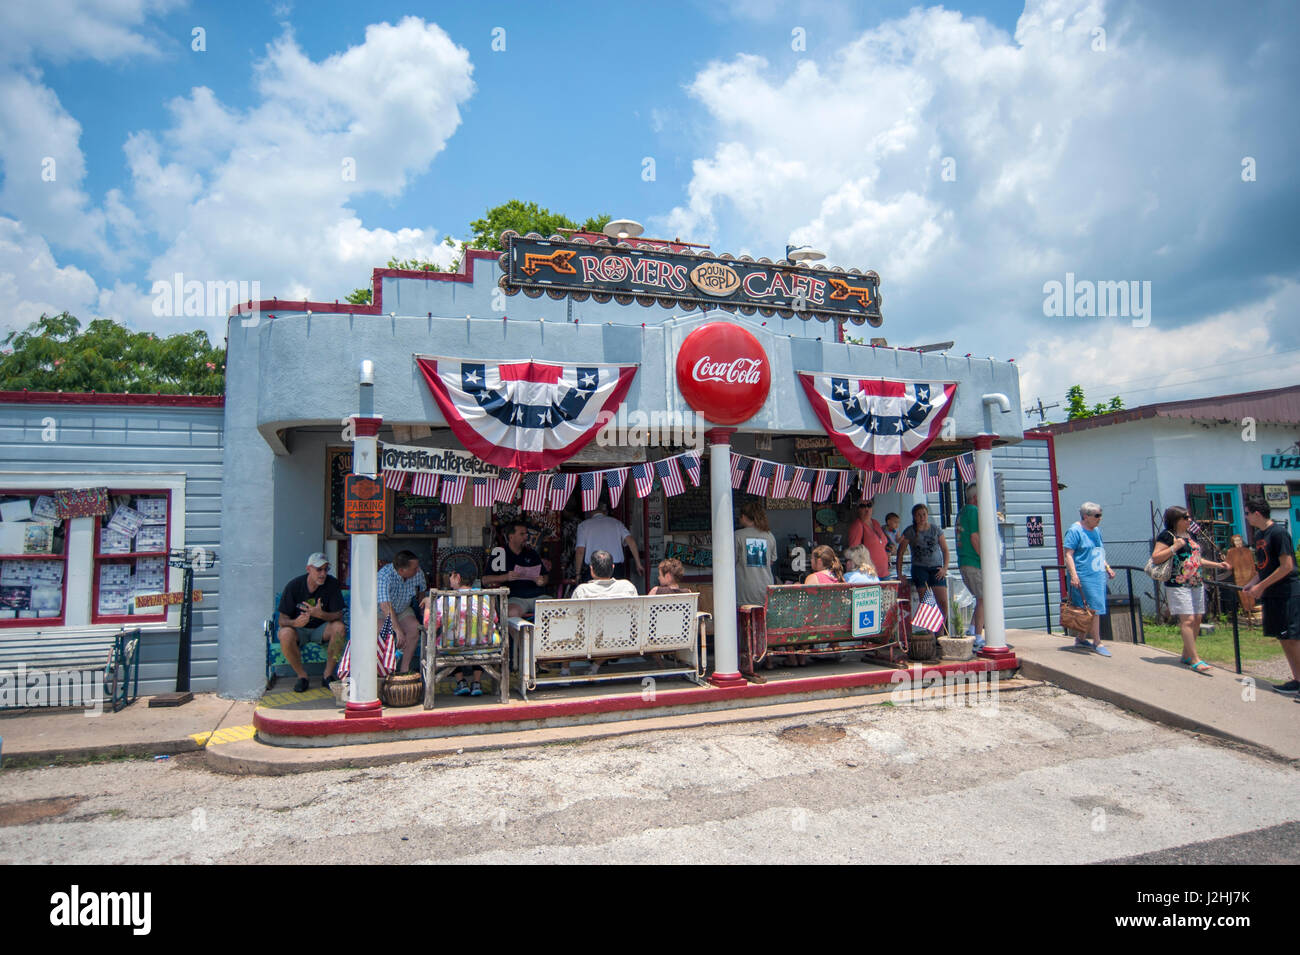 Top Cafe Royers Runde, Runde Spitze, Texas, Usa (nur zur redaktionellen Verwendung) Stockfoto